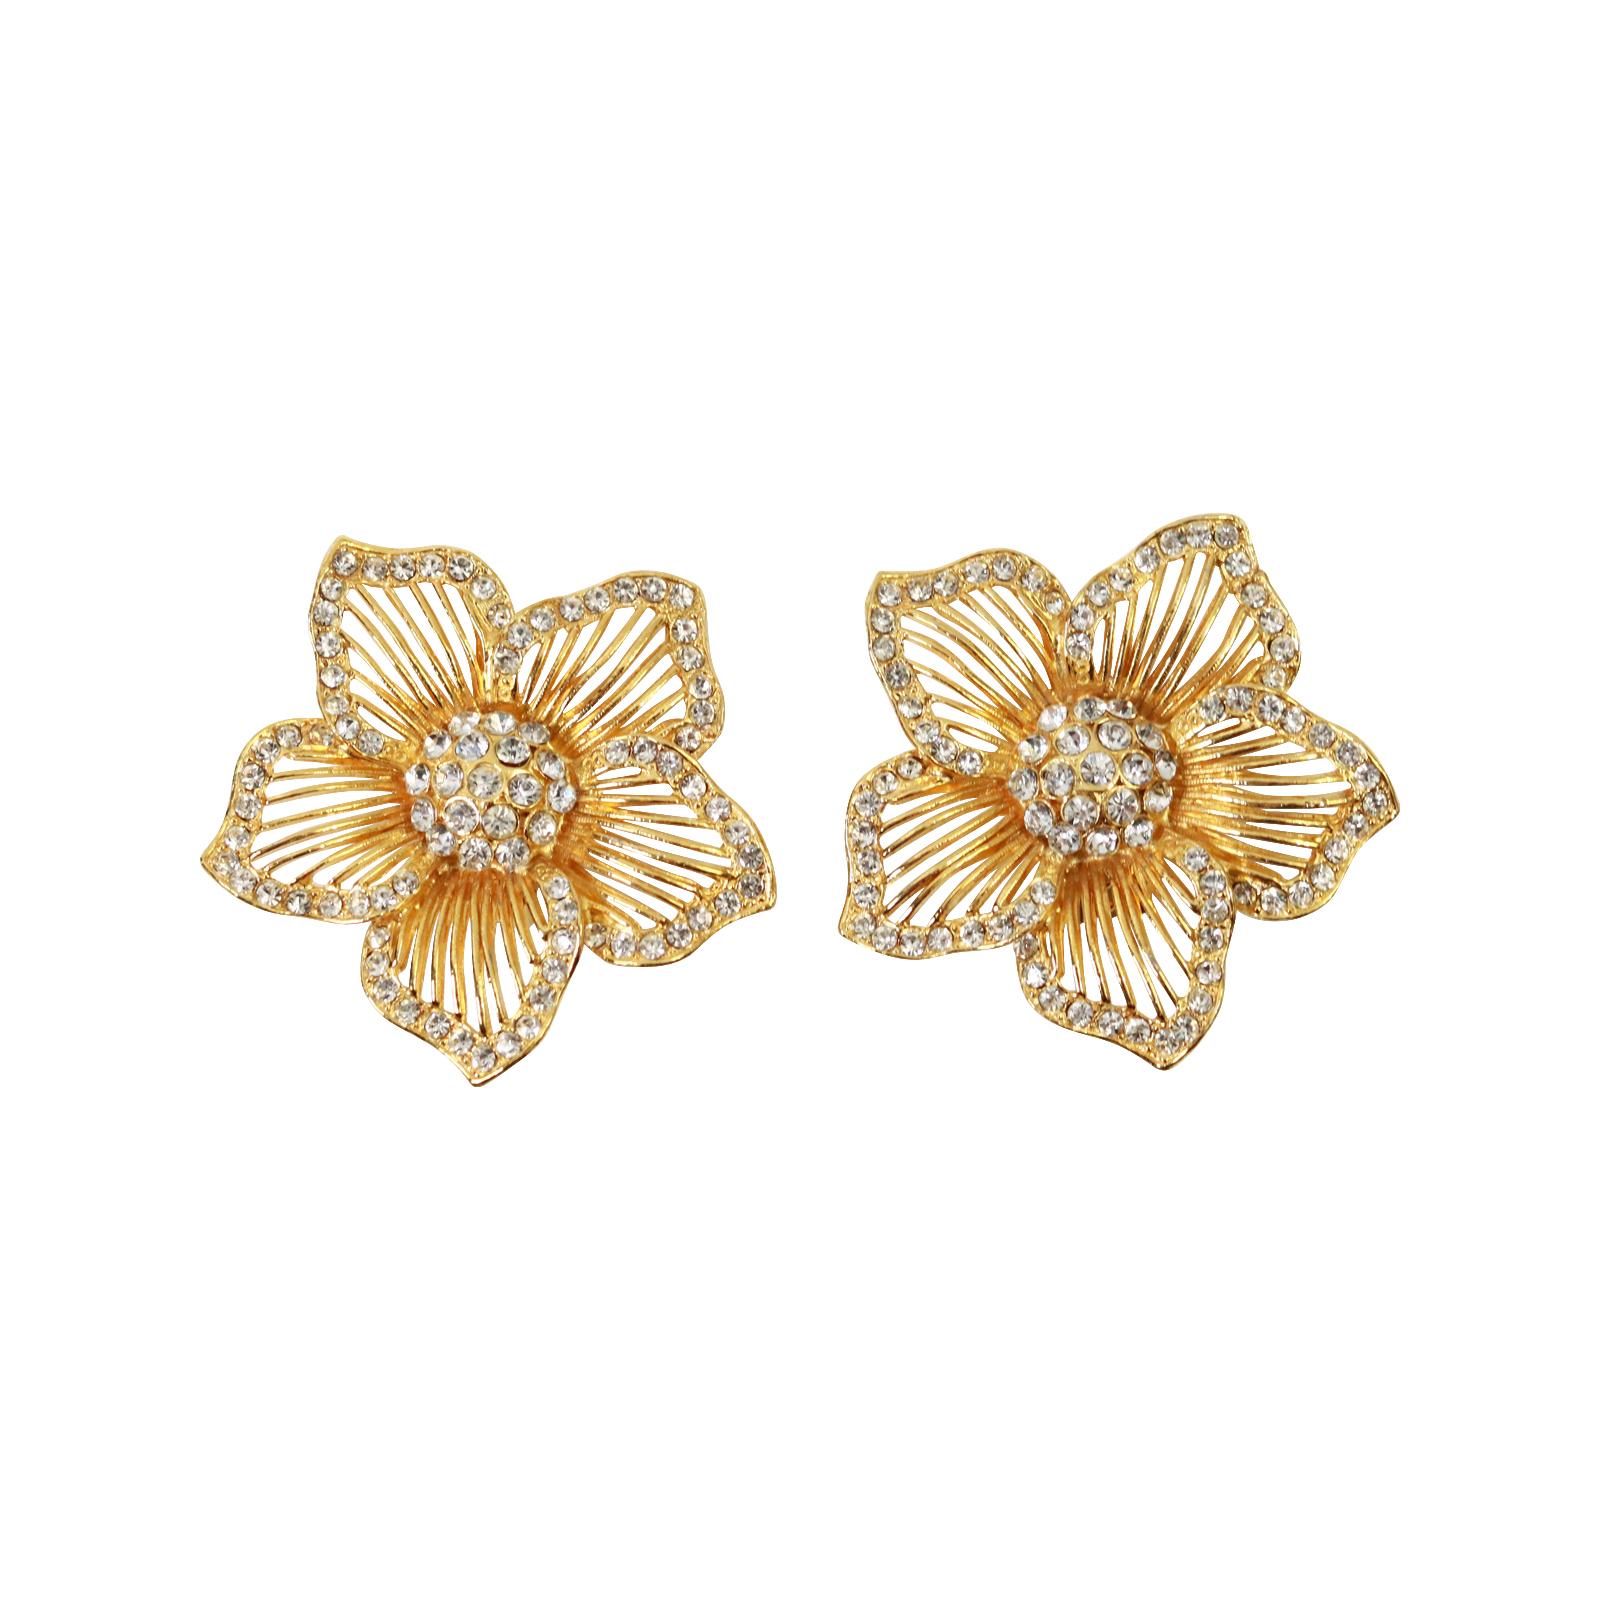 Vintage Gold Tone und Diamante Flower Earrings, CIRCA 1980's. Diese sind gut gemacht und erhebliche Ohrringe Die Ohrringe haben eine Umgebung der Diamanten und die Mitte ist ein Hügel von Pflaster. Alle Blütenblätter sind offen und werden durch